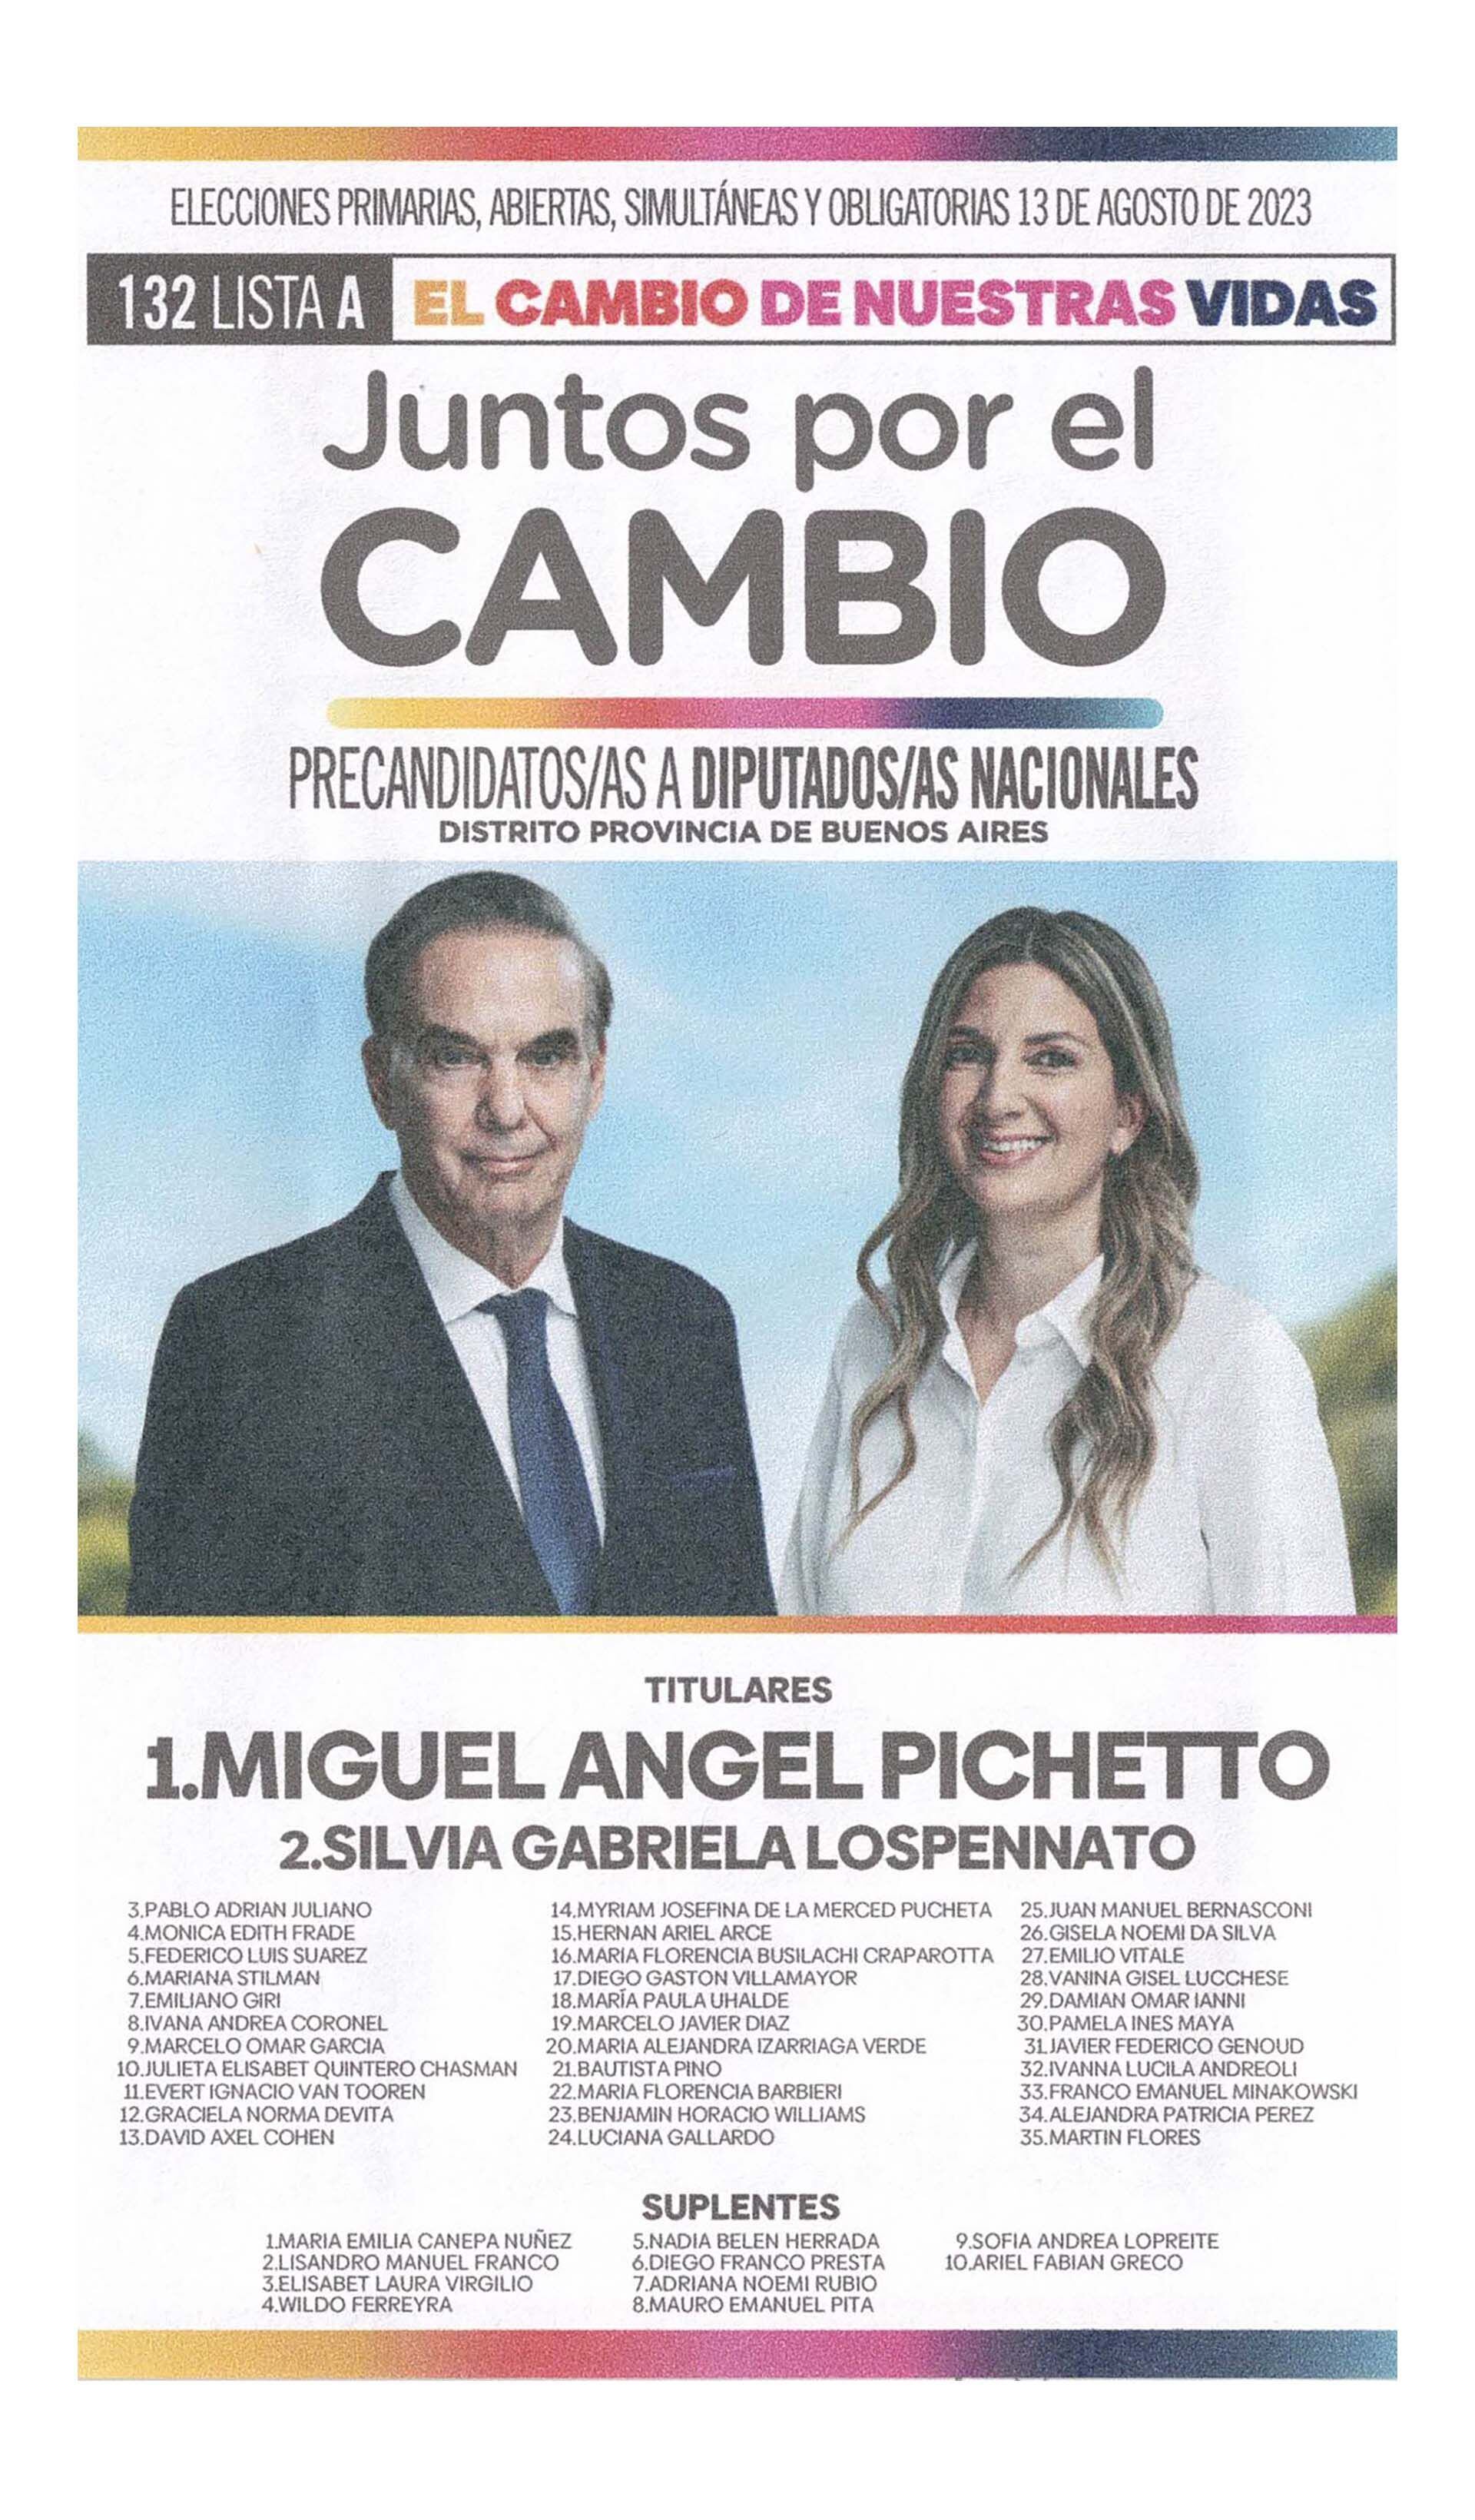 La boleta oficial de Miguel Ángel Pichetto de precandidatos a diputados nacionales en Buenos Aires